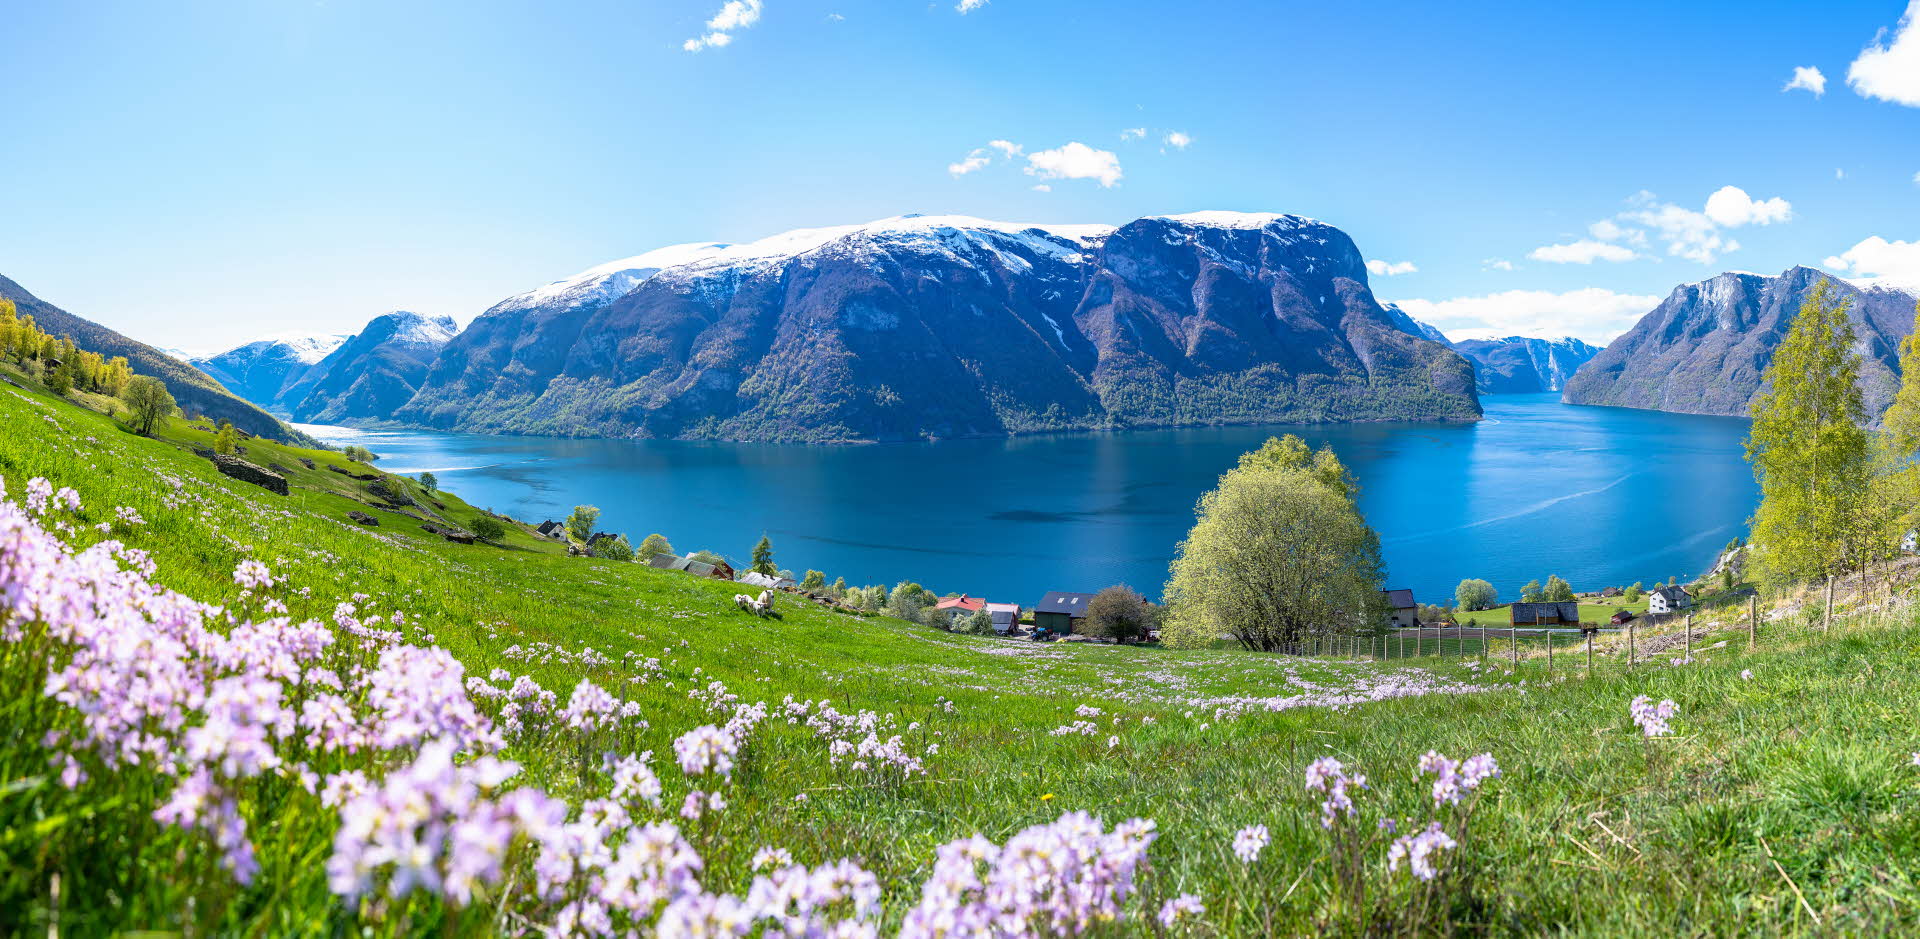 En Norvège, vue panoramique sur des moutons dans une prairie verdoyante et fleurie à Aurland, avec l’Aurlandsfjord, inscrit au patrimoine mondial de l’UNESCO, à l’arrière-plan